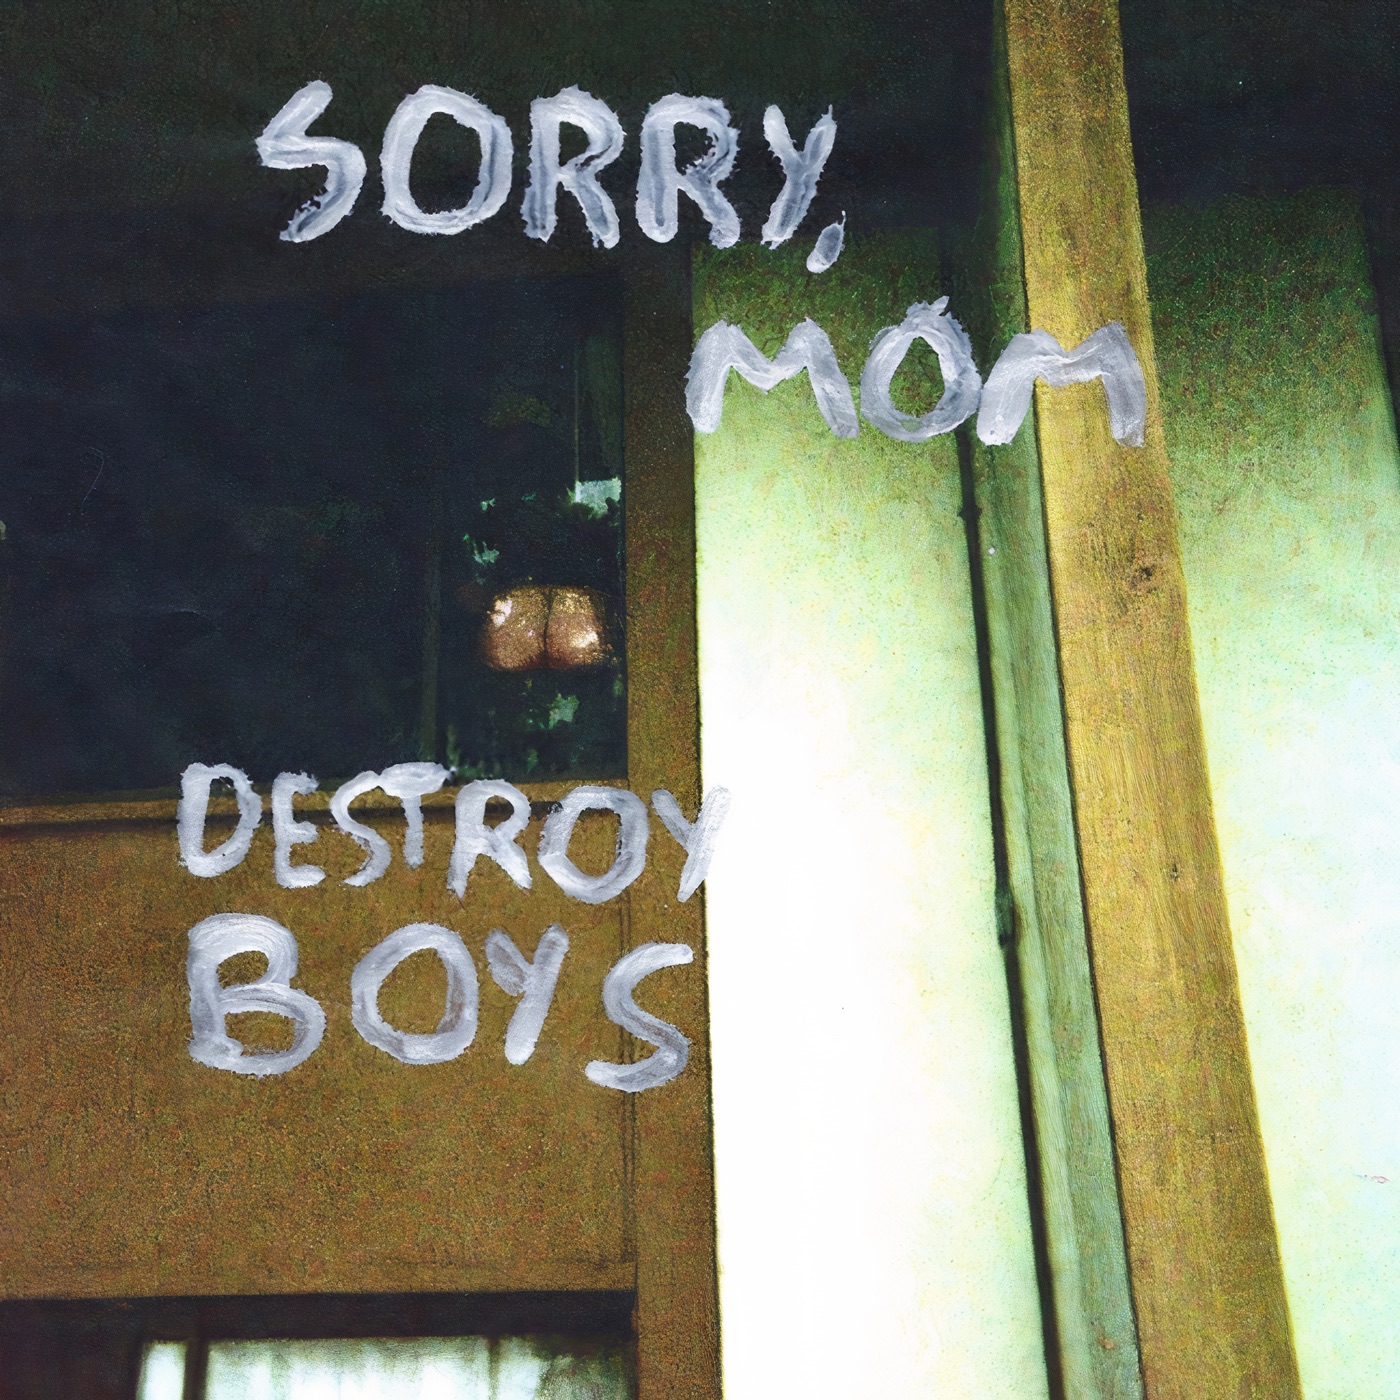 Sorry, Mom by Destroy Boys